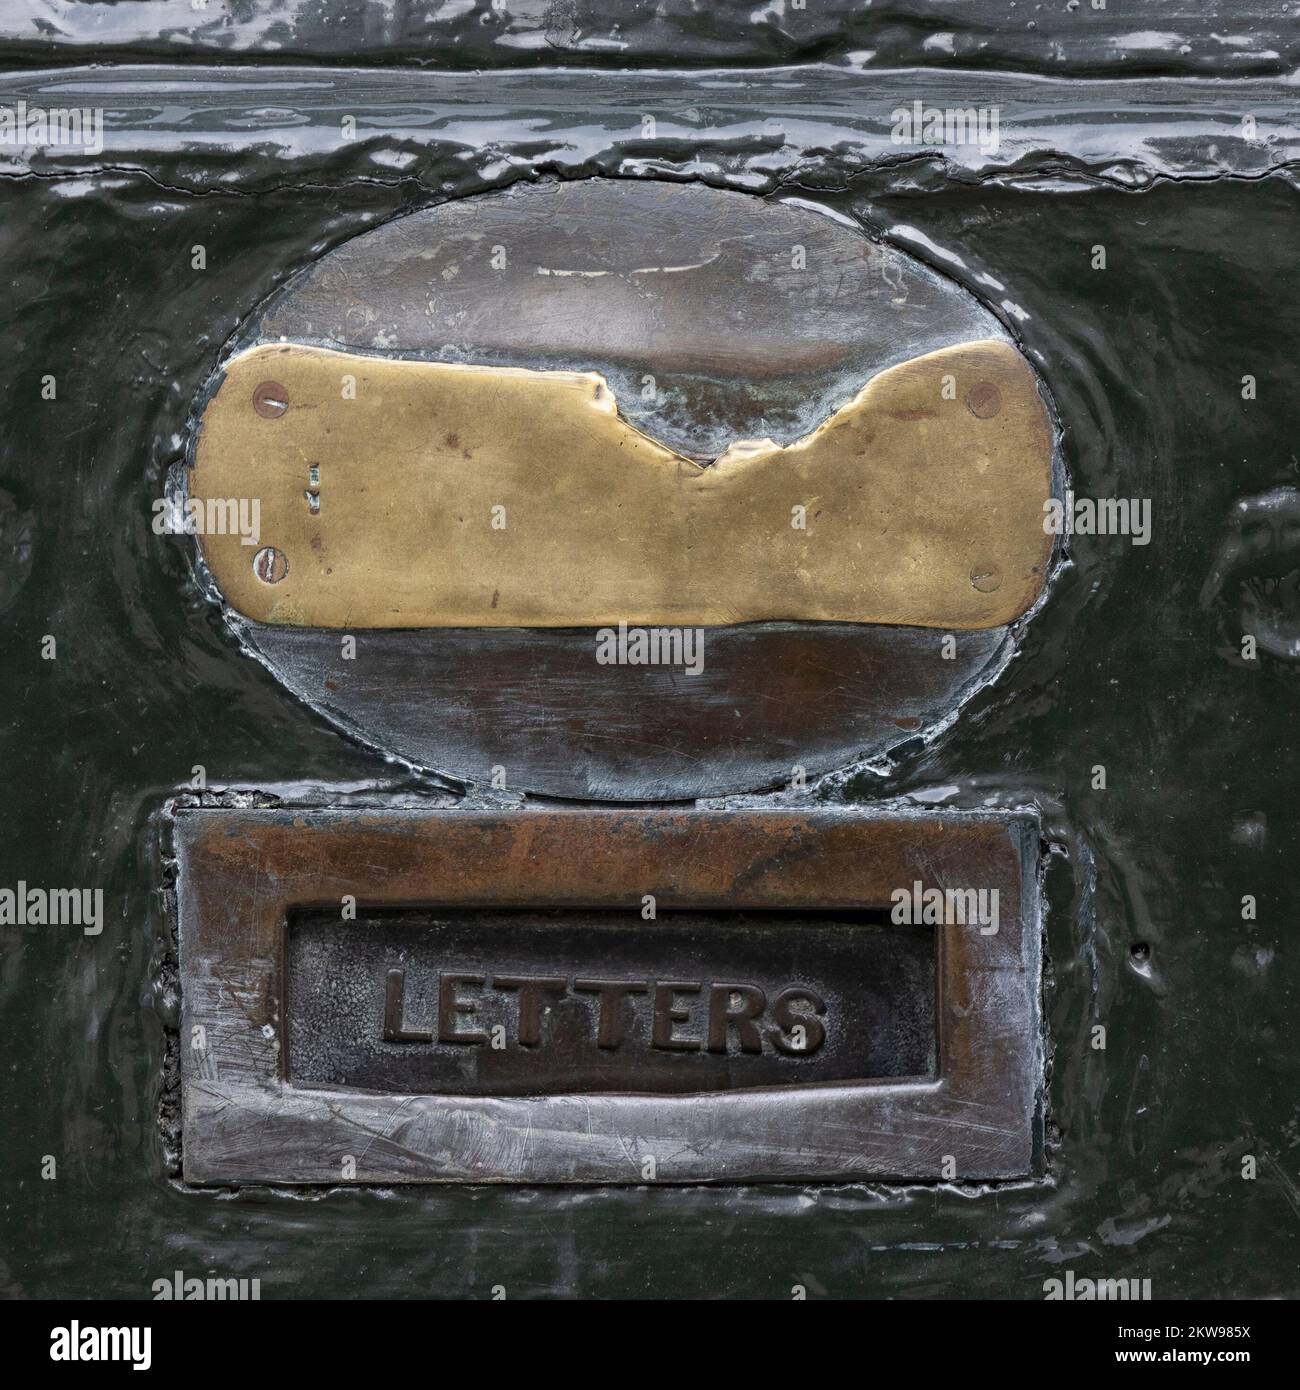 LONDRES, Reino Unido - 16 DE NOVIEMBRE de 2022: Primer plano de la antigua caja de letras de latón con la placa de bronce desgastada en la puerta de madera de Lock and Co Hatters tienda en St James's St Foto de stock